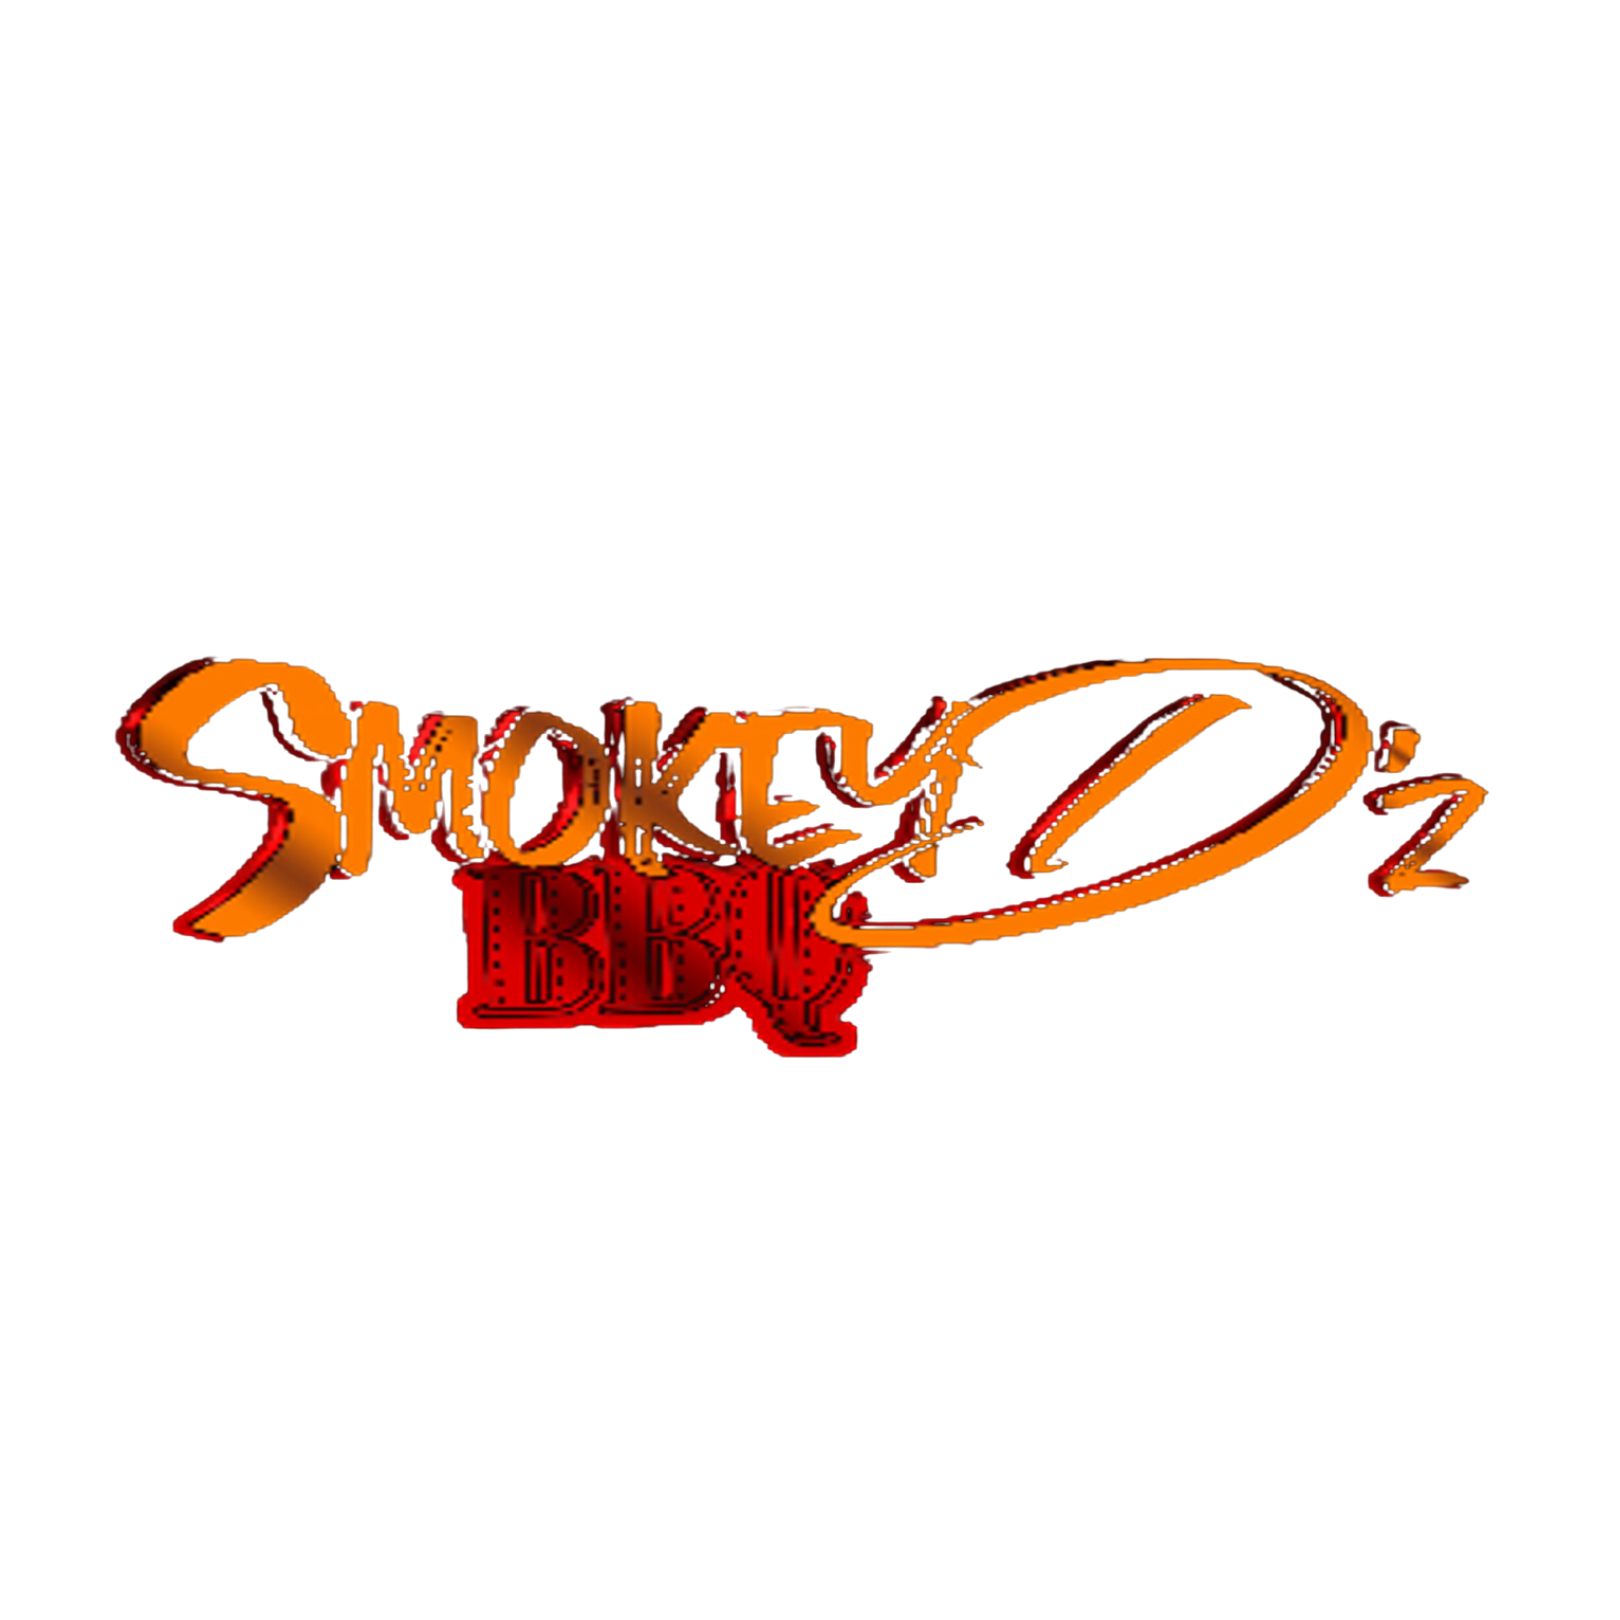 Smokey Dz BBQ